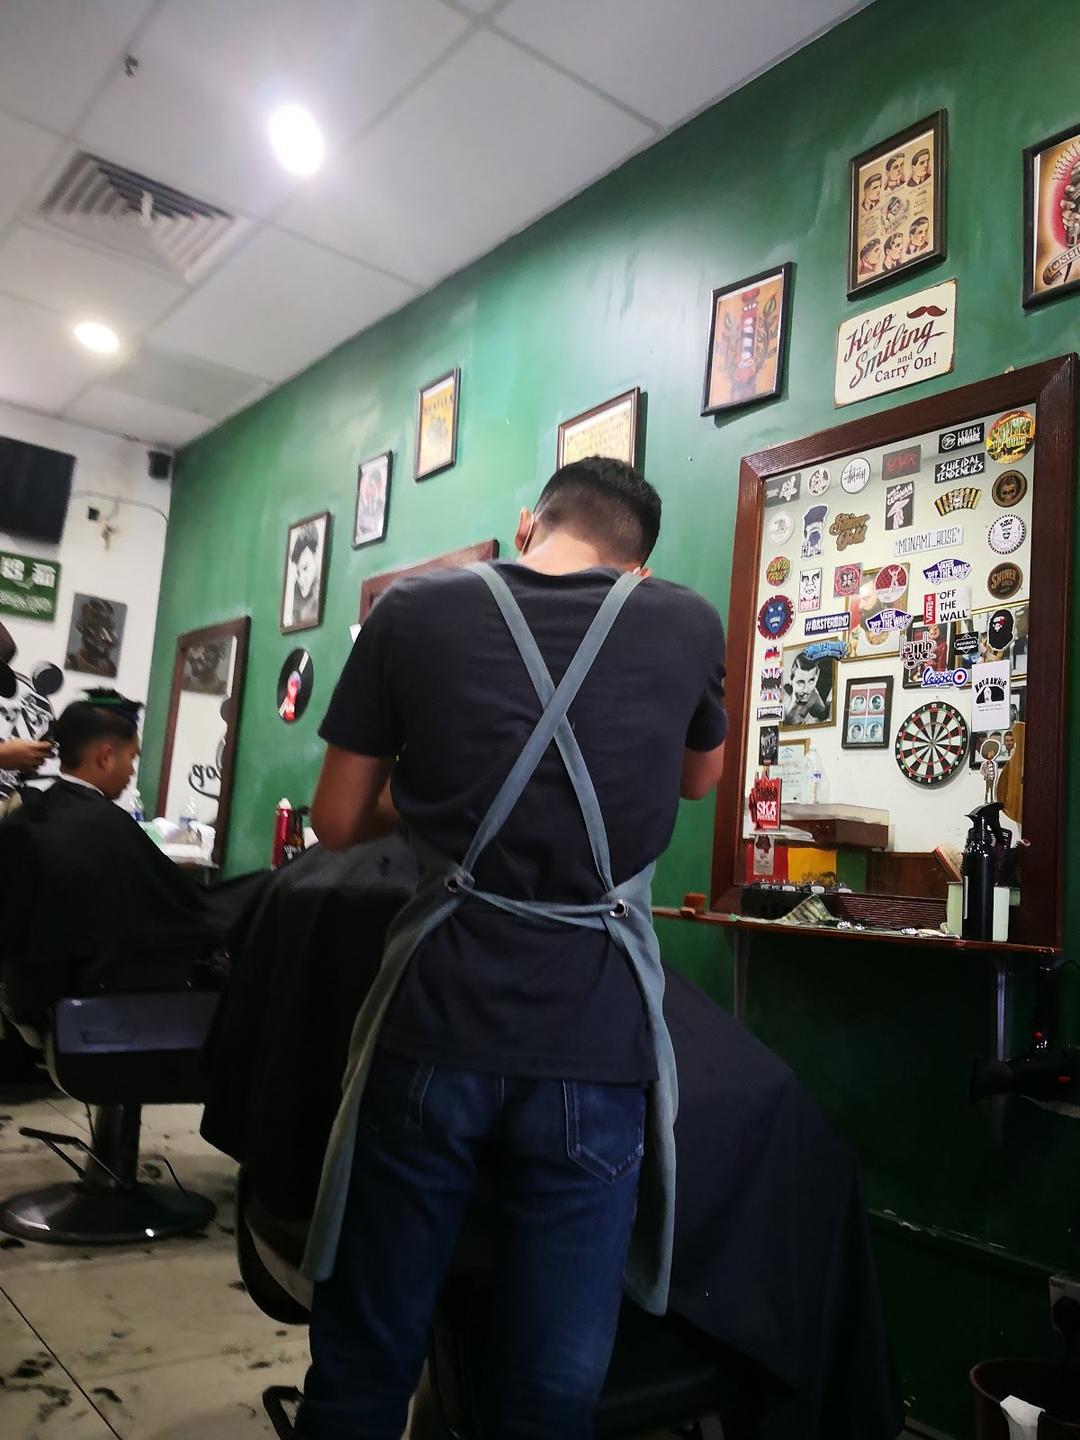 Photo of Bro's Barbershop Kota Kinabalu - Kota Kinabalu, Sabah, Malaysia